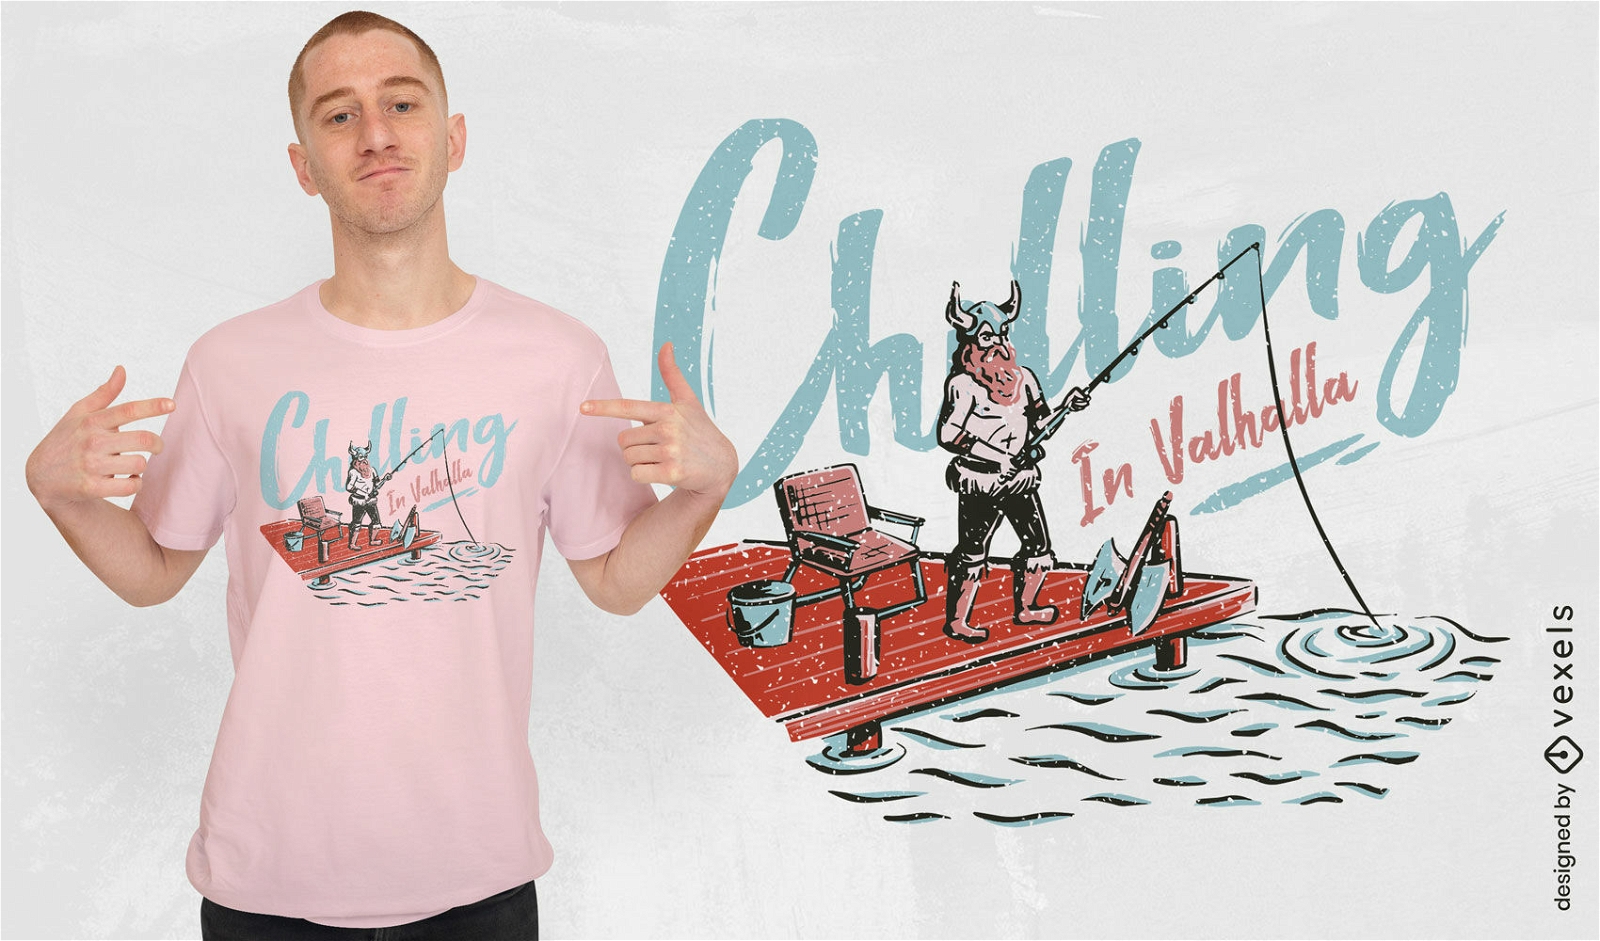 Viking fishing funny t-shirt design